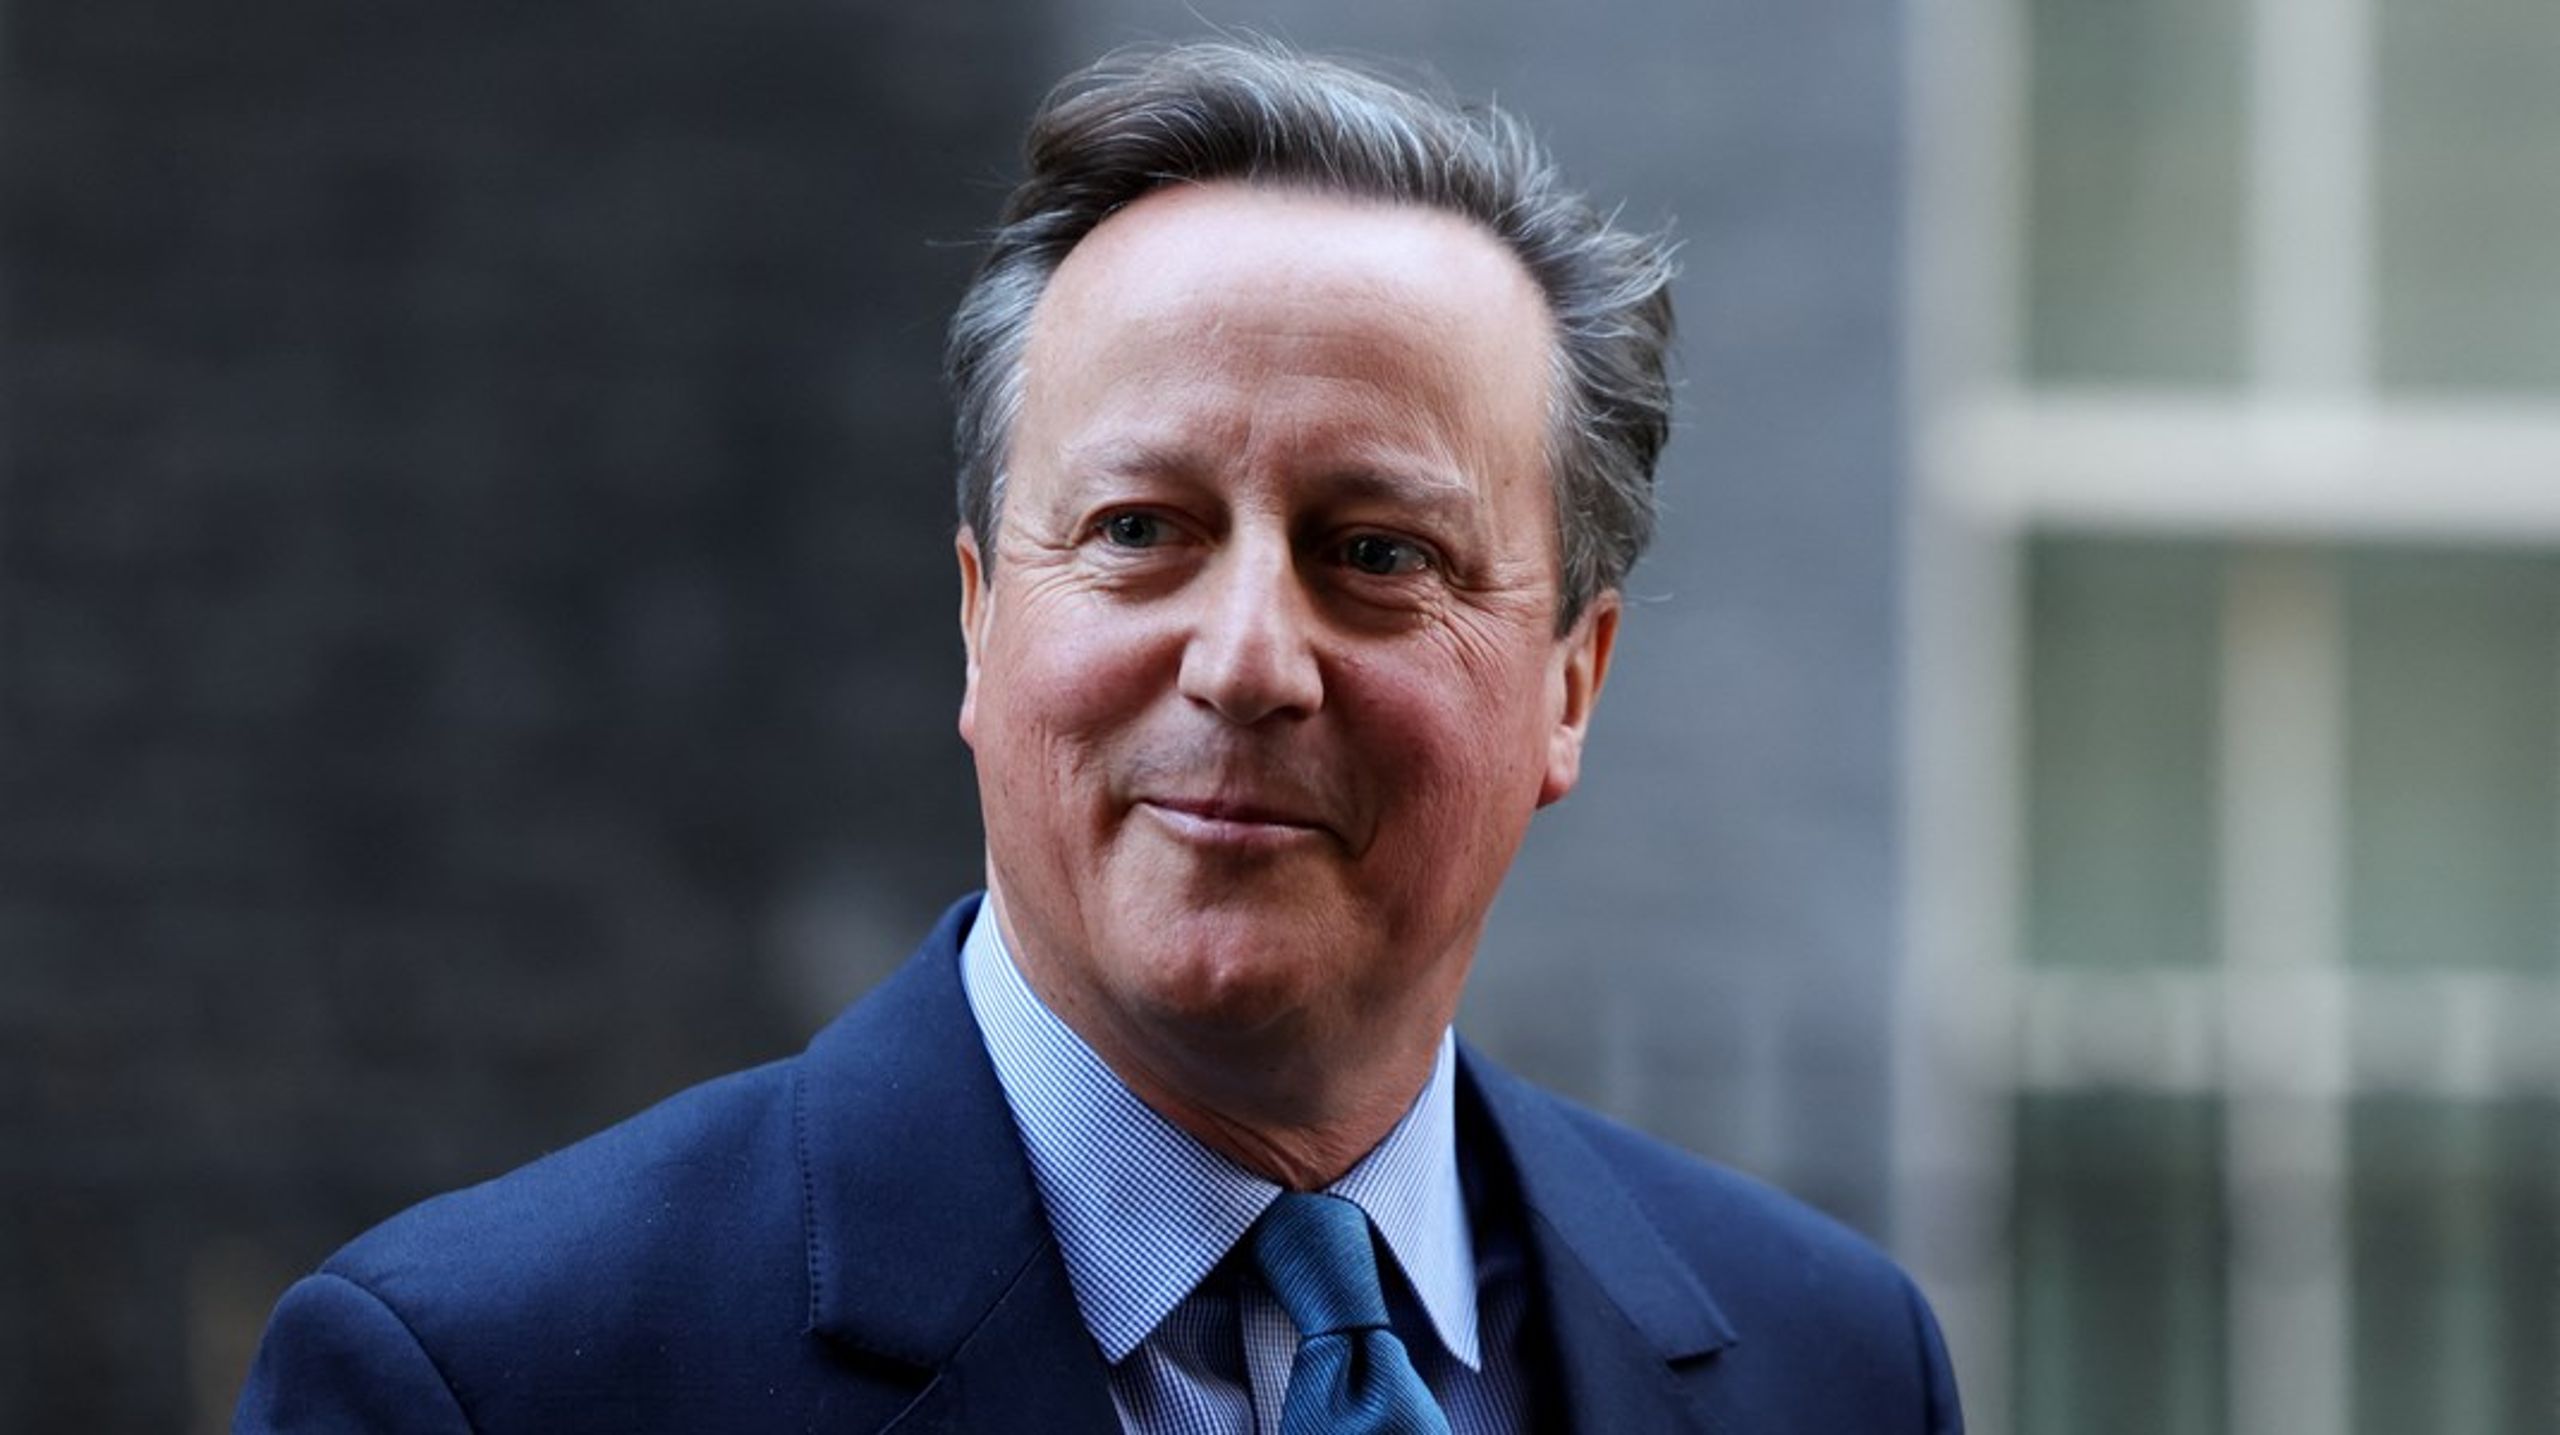 David Cameron var premierminister fra 2010 til 2016 og trådte tilbage efter Brexit-afstemningen. Han er nu tilbage på den britiske politiske scene.